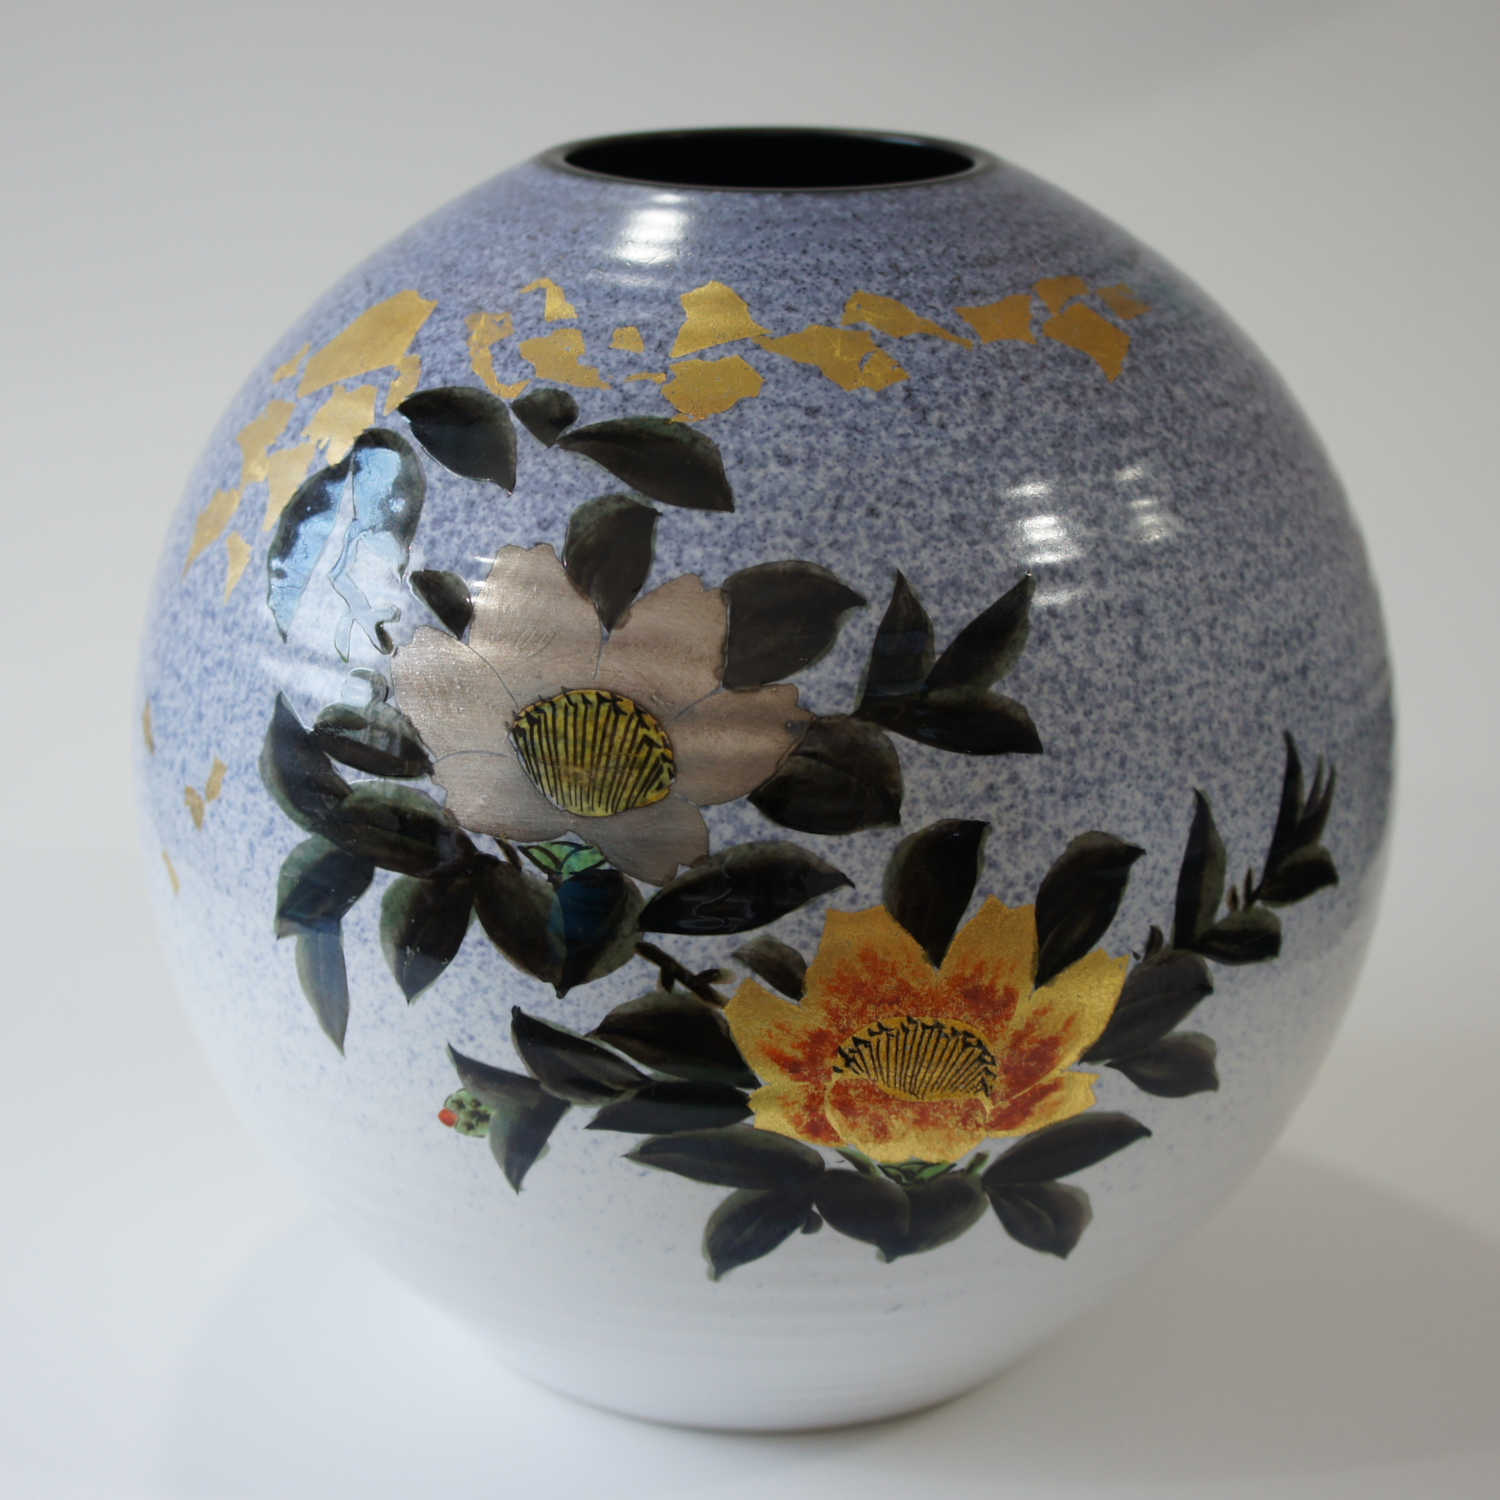 Japanese-made ceramic vases